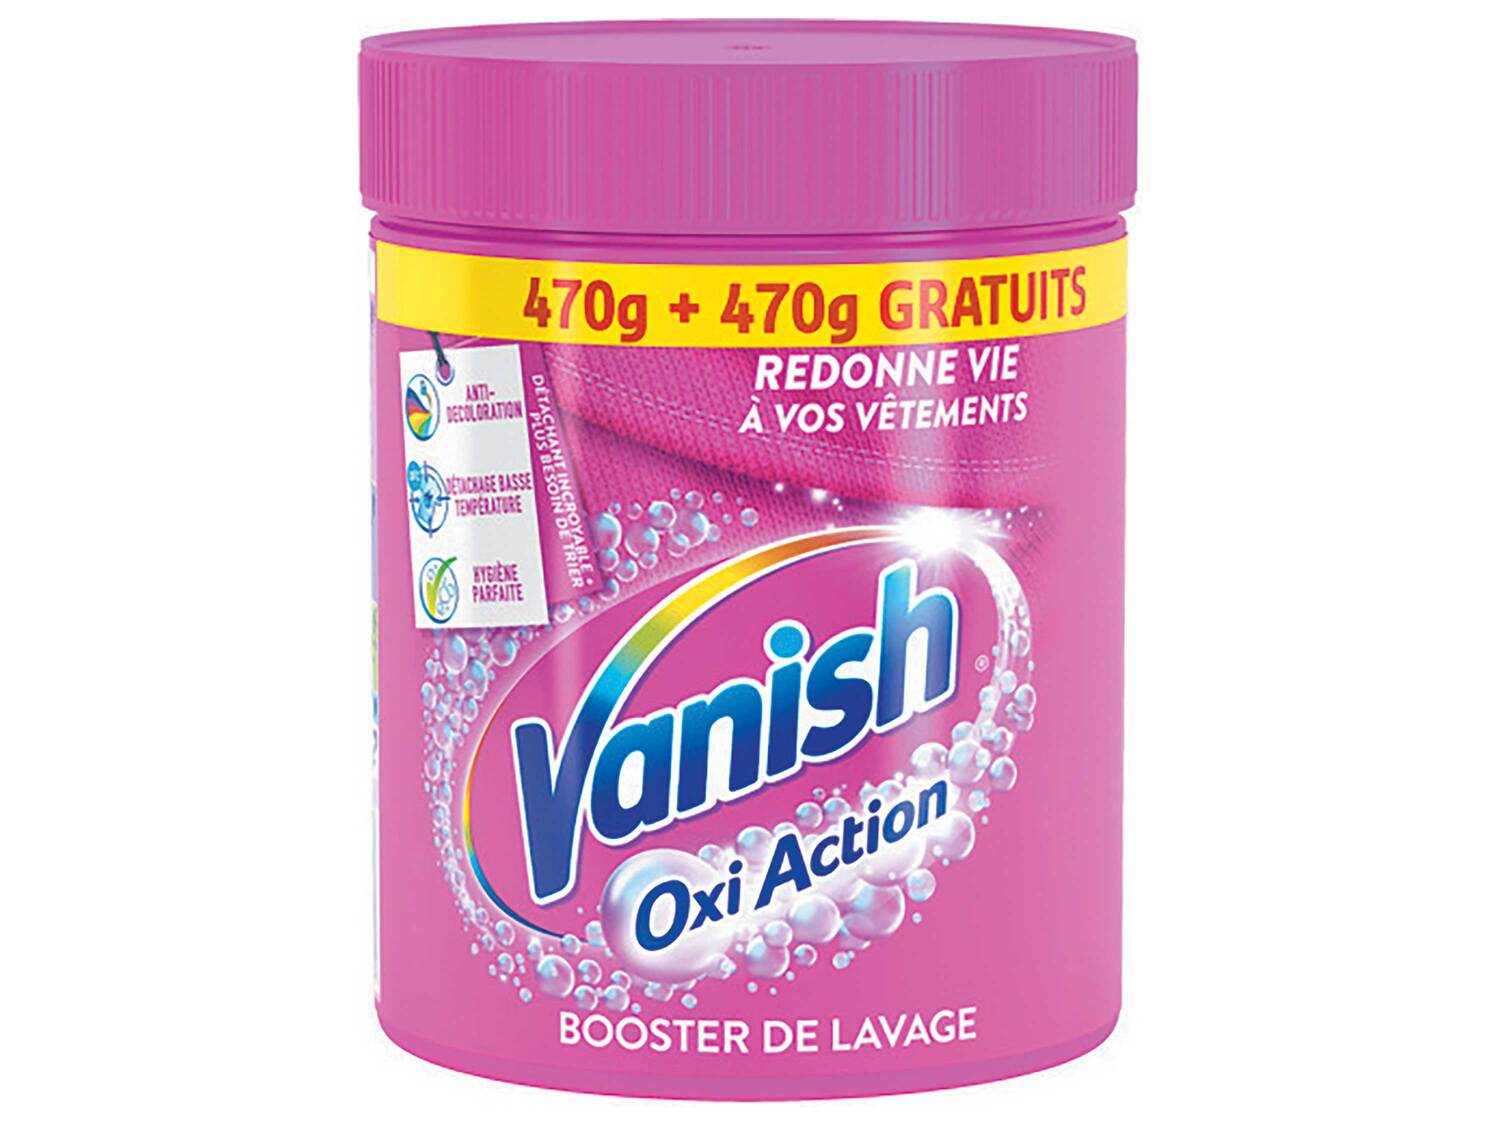 Vanish détachant Oxi Action poudre , le prix 4.69 &#8364; 
- 470 g + 470 g ...